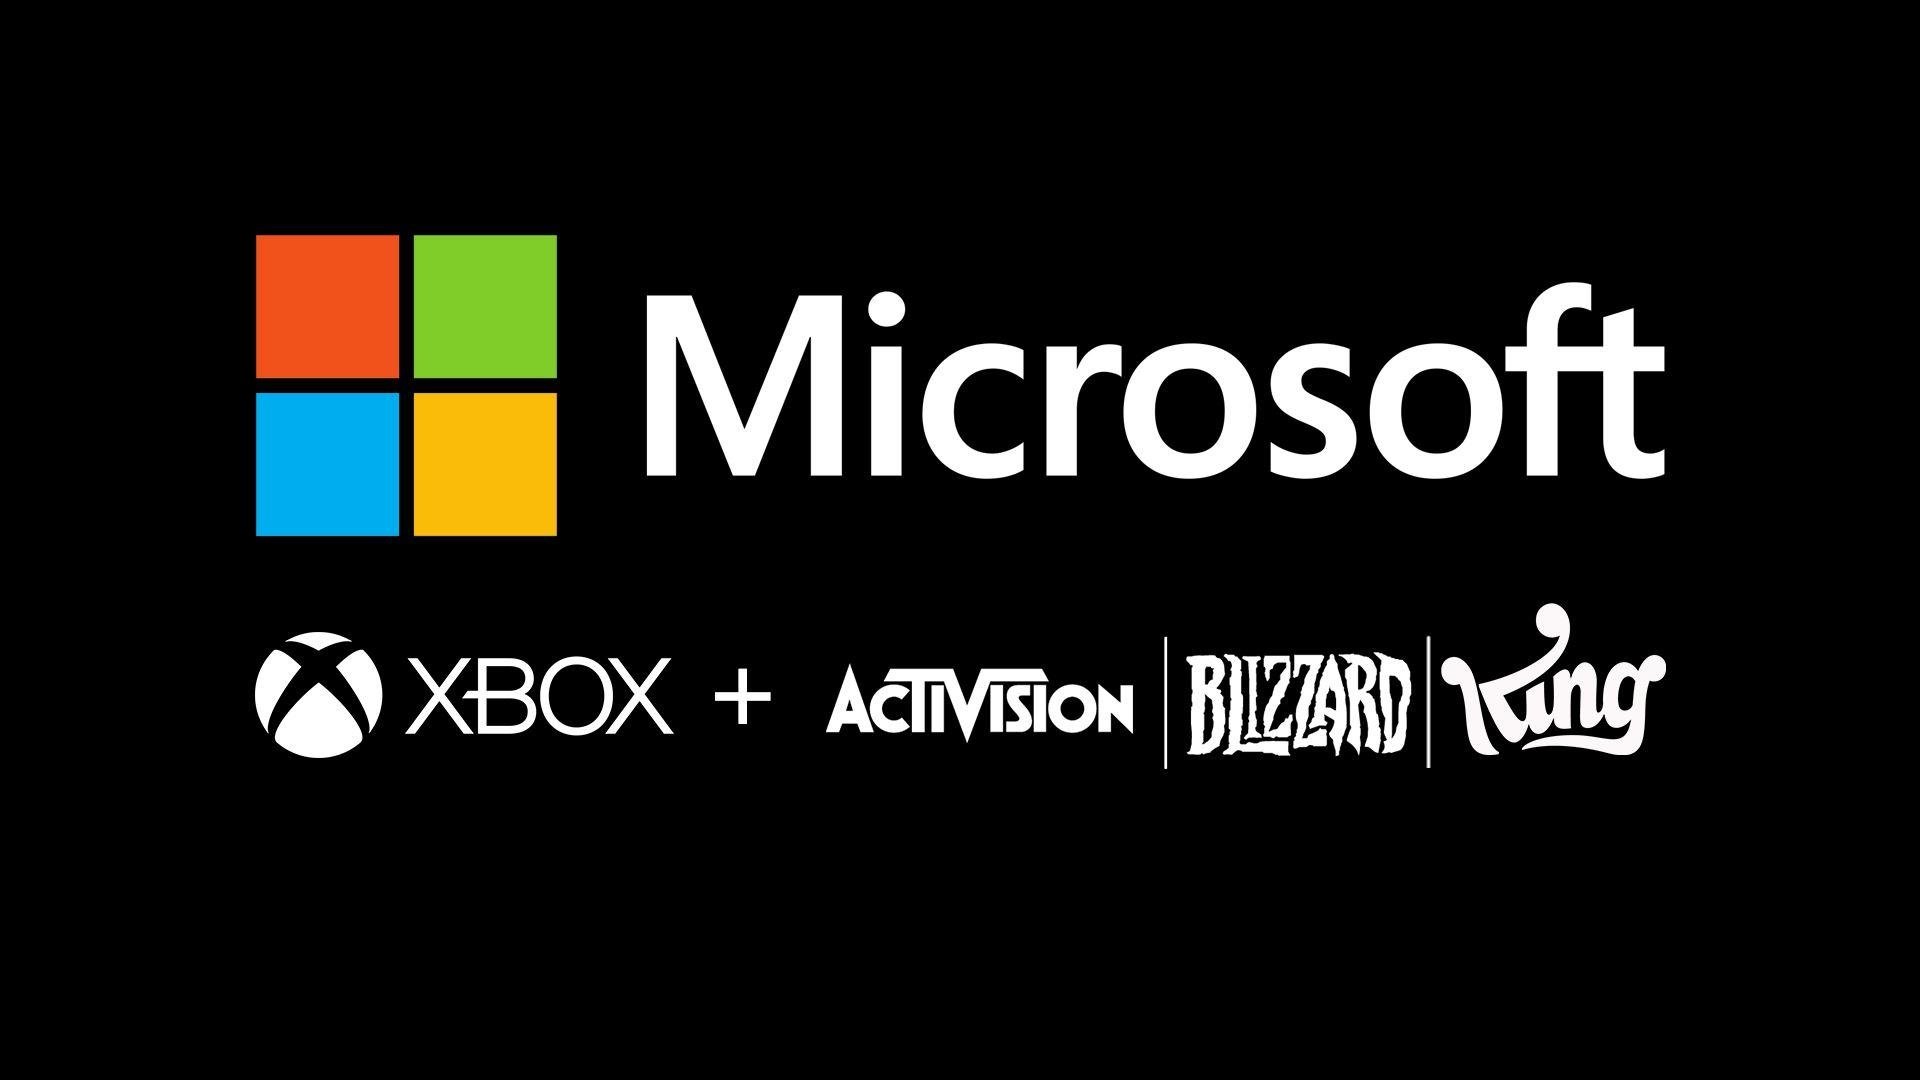 Microsoft e Activision com vários logos dos seus estúdios